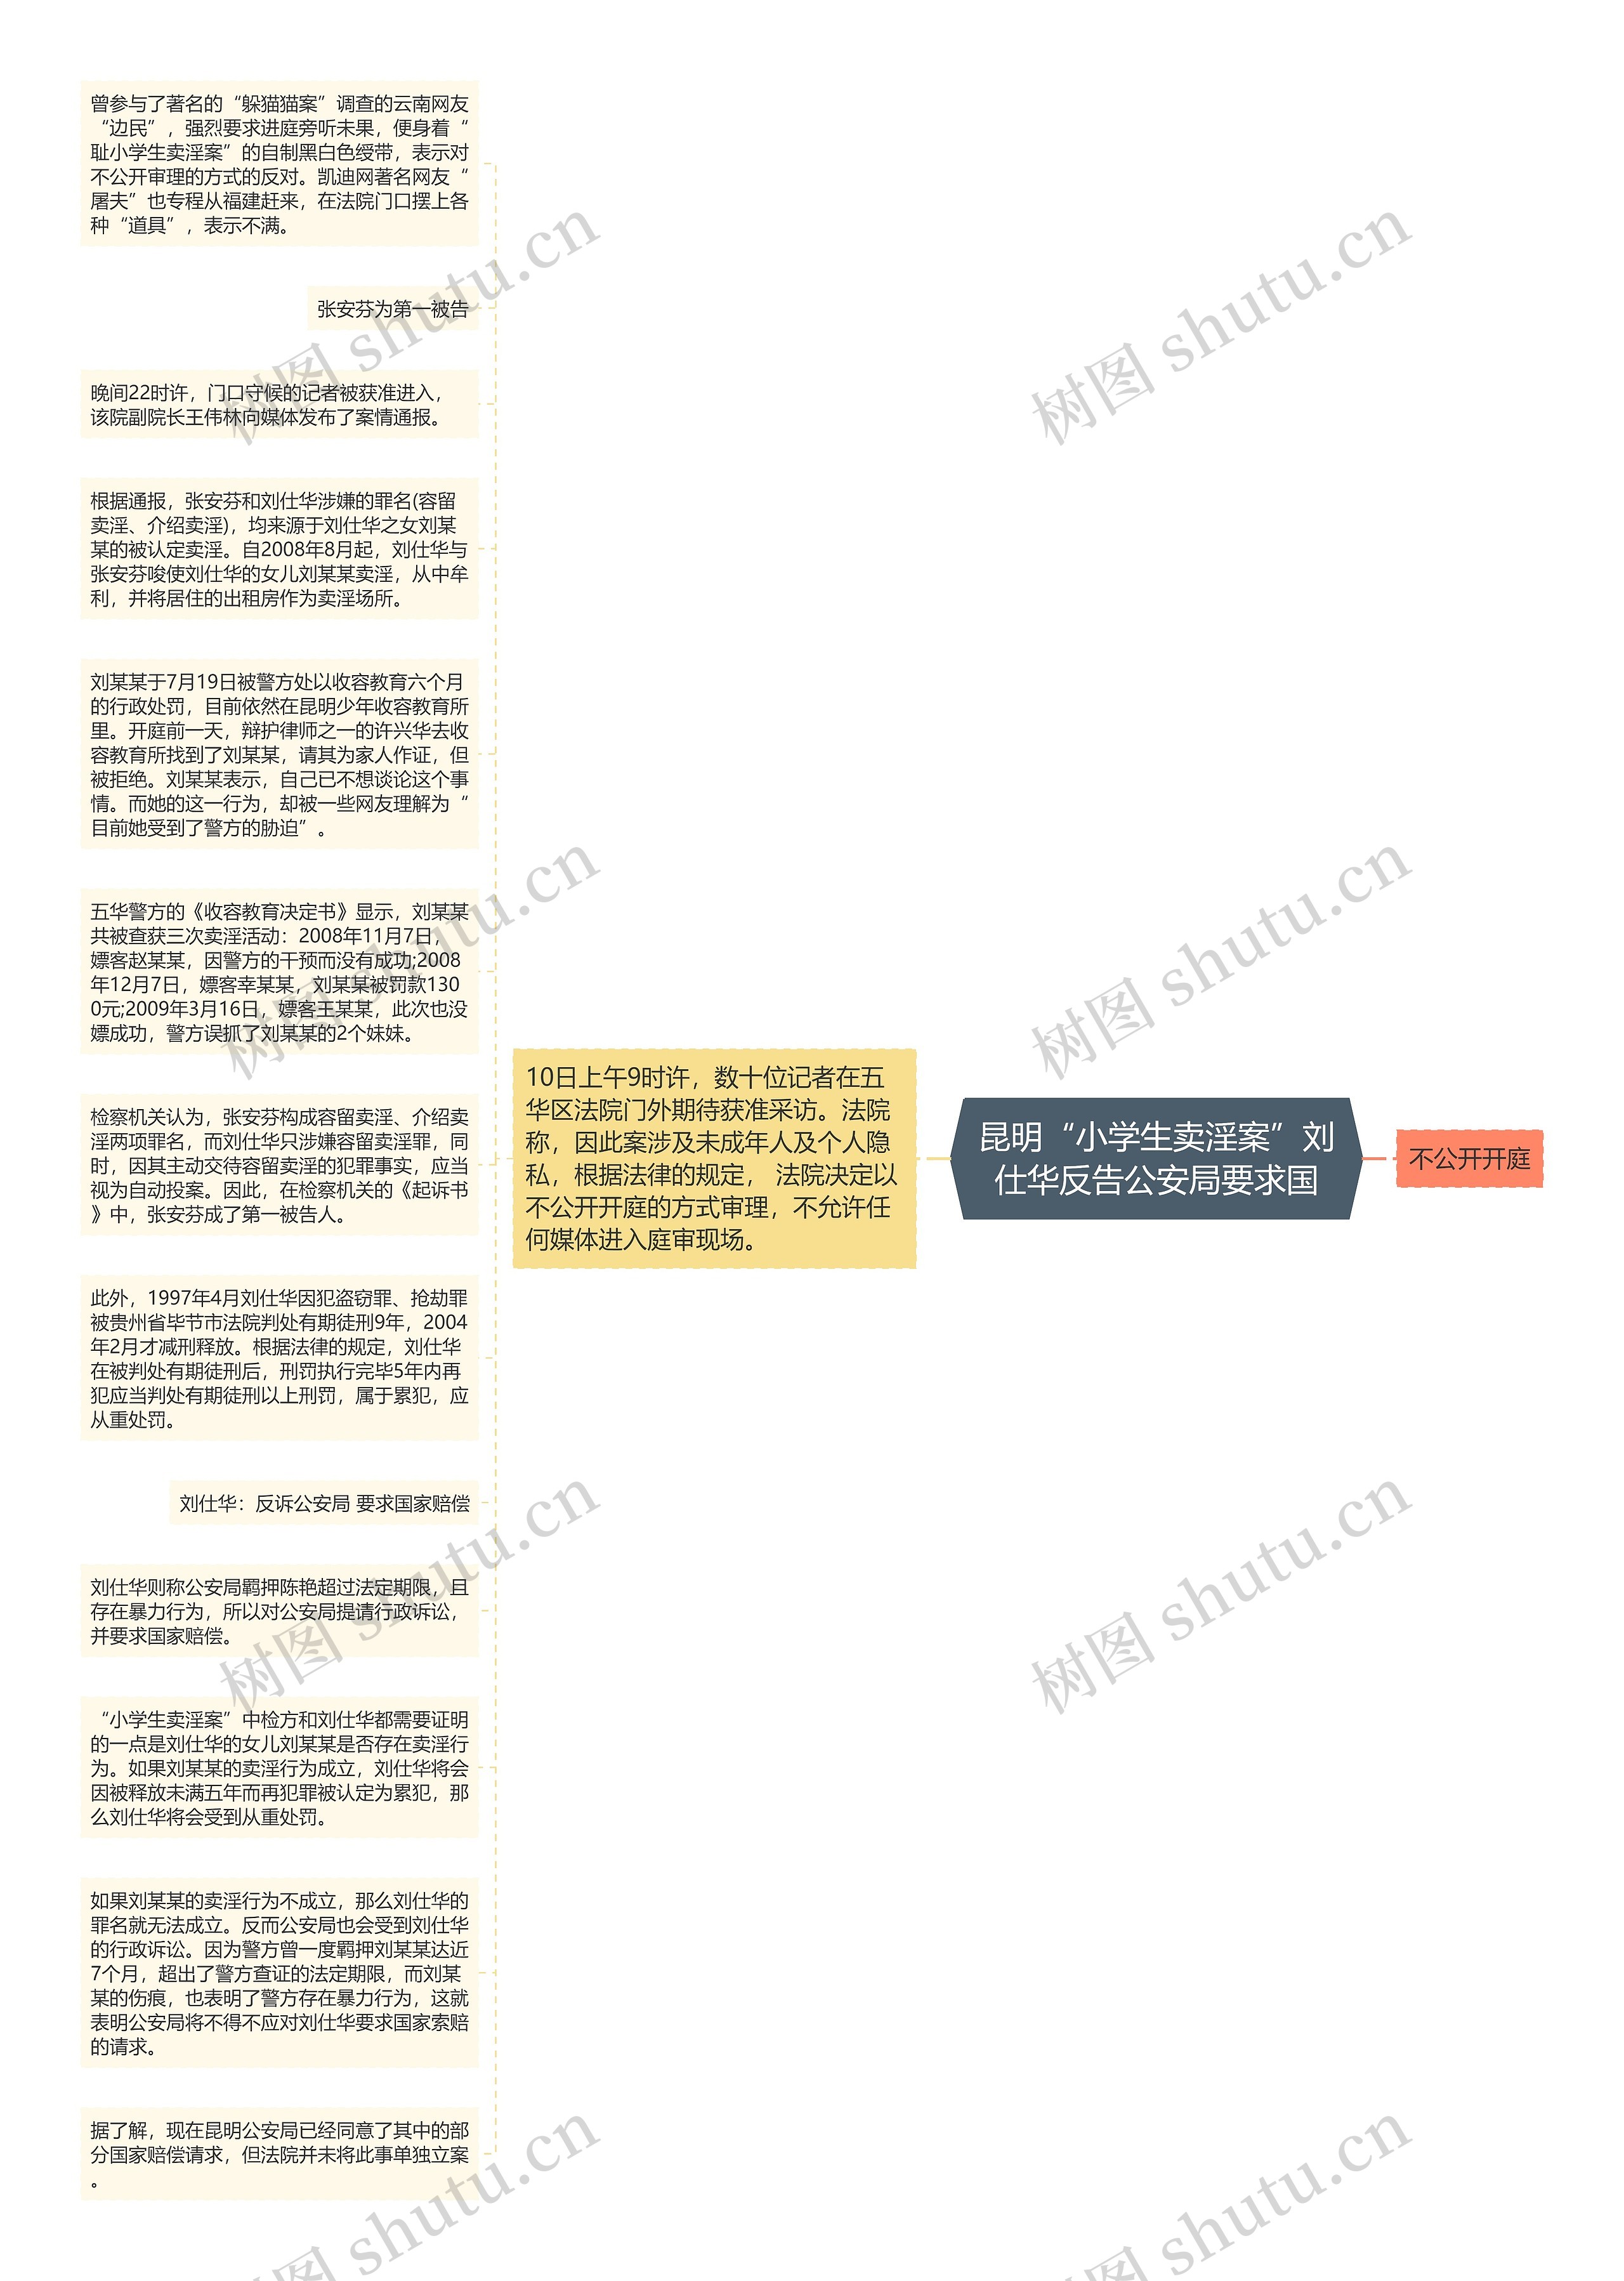 昆明“小学生卖淫案”刘仕华反告公安局要求国思维导图